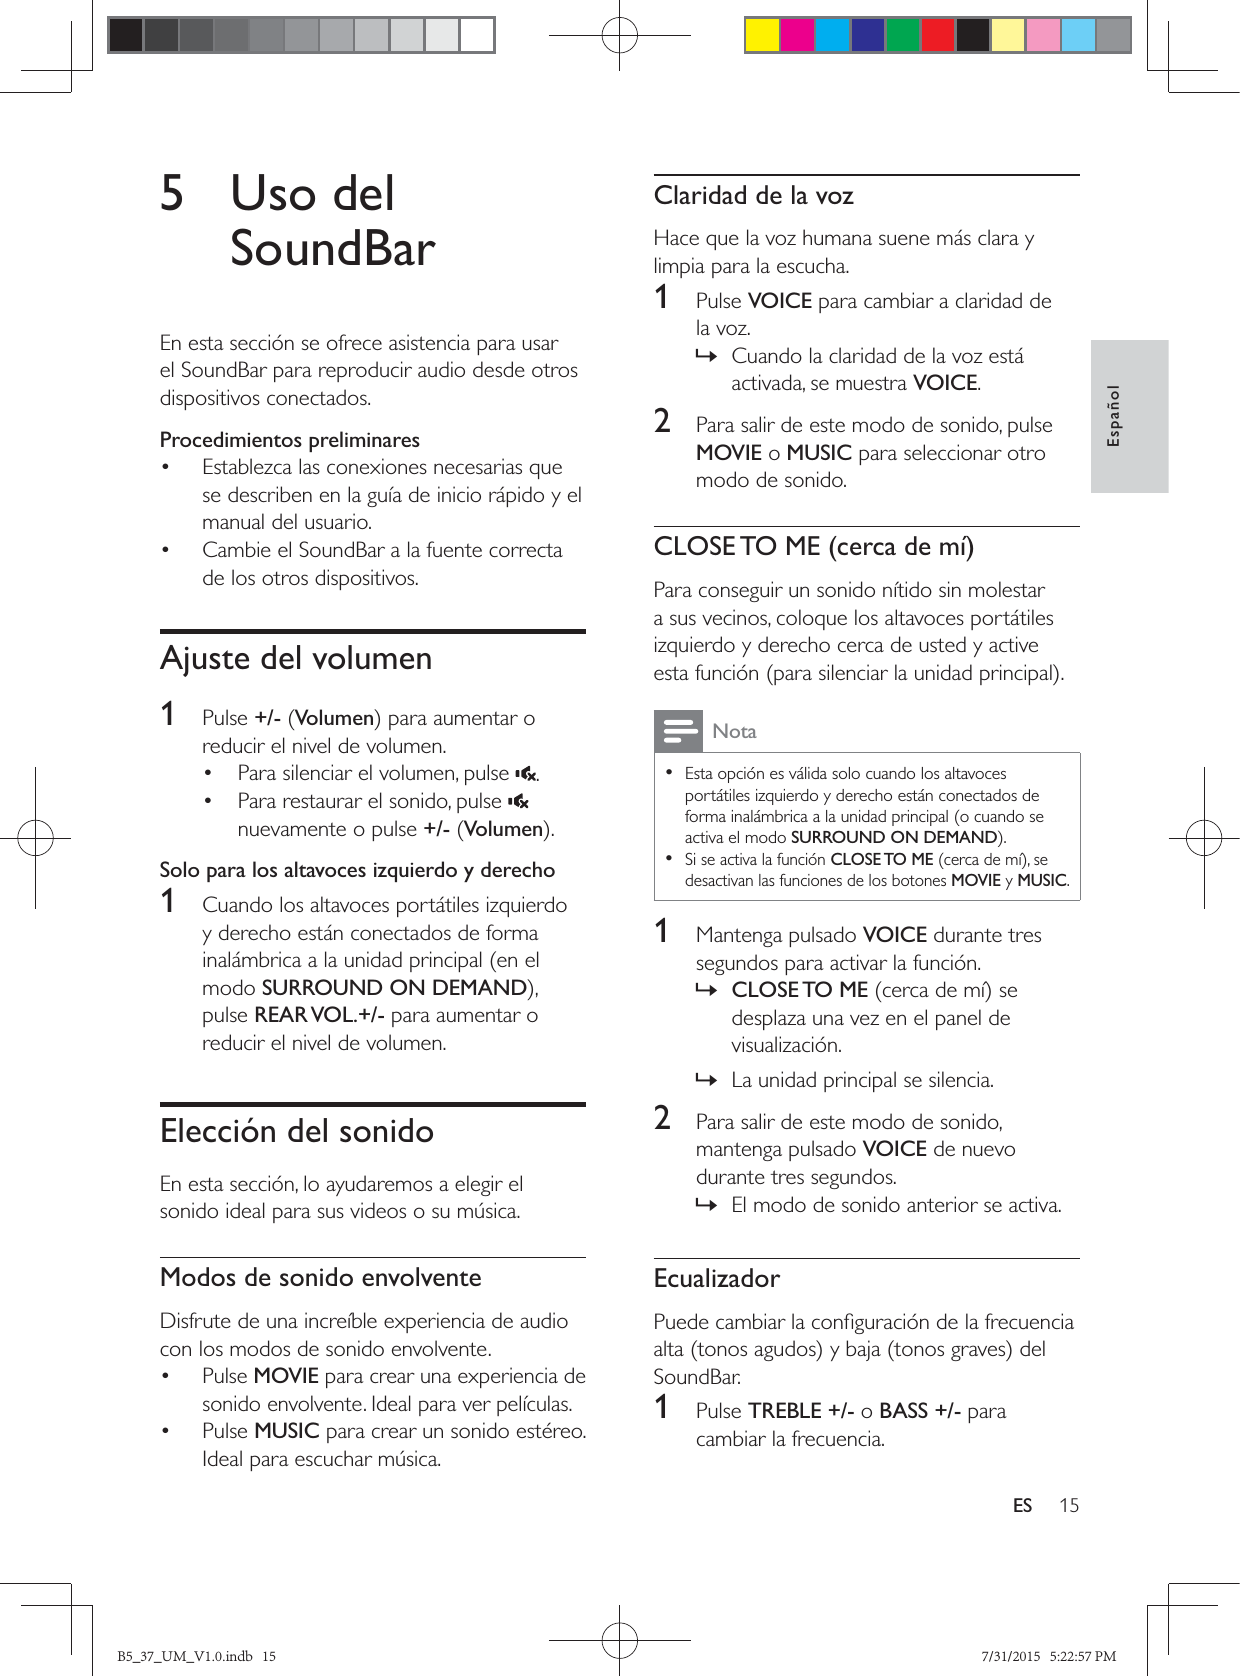 15EspañolES5 Uso del SoundBarEn esta sección se ofrece asistencia para usar el SoundBar para reproducir audio desde otros dispositivos conectados.Procedimientos preliminares•  Establezca las conexiones necesarias que se describen en la guía de inicio rápido y el manual del usuario.•  Cambie el SoundBar a la fuente correcta de los otros dispositivos.Ajuste del volumen1  Pulse +/- (Volumenreducir el nivel de volumen.•  Para silenciar el volumen, pulse  .•  Para restaurar el sonido, pulse   nuevamente o pulse +/- (VolumenSolo para los altavoces izquierdo y derecho1  Cuando los altavoces portátiles izquierdo y derecho están conectados de forma inalámbrica a la unidad principal (en el modo SURROUND ON DEMANDpulse REAR VOL.+/- para aumentar o reducir el nivel de volumen. Elección del sonidoEn esta sección, lo ayudaremos a elegir el sonido ideal para sus videos o su música.Modos de sonido envolventeDisfrute de una increíble experiencia de audio con los modos de sonido envolvente.• Pulse MOVIE para crear una experiencia de sonido envolvente. Ideal para ver películas.• Pulse MUSIC para crear un sonido estéreo. Ideal para escuchar música. Claridad de la vozHace que la voz humana suene más clara y limpia para la escucha.1  Pulse VOICE para cambiar a claridad de la voz. » Cuando la claridad de la voz está activada, se muestra VOICE.2  Para salir de este modo de sonido, pulse MOVIE o MUSIC para seleccionar otro modo de sonido.CLOSE TO ME (cerca de mí)Para conseguir un sonido nítido sin molestar a sus vecinos, coloque los altavoces portátiles izquierdo y derecho cerca de usted y active Nota • Esta opción es válida solo cuando los altavoces portátiles izquierdo y derecho están conectados de forma inalámbrica a la unidad principal (o cuando se activa el modo SURROUND ON DEMAND •Si se activa la función CLOSE TO MEdesactivan las funciones de los botones MOVIE y MUSIC.1  Mantenga pulsado VOICE durante tres segundos para activar la función. » CLOSE TO  MEdesplaza una vez en el panel de visualización. » La unidad principal se silencia.2  Para salir de este modo de sonido, mantenga pulsado VOICE de nuevo durante tres segundos.  » El modo de sonido anterior se activa.EcualizadorSoundBar.1  Pulse TREBLE +/- o BASS +/- para cambiar la frecuencia.B5_37_UM_V1.0.indb   15 7/31/2015   5:22:57 PM